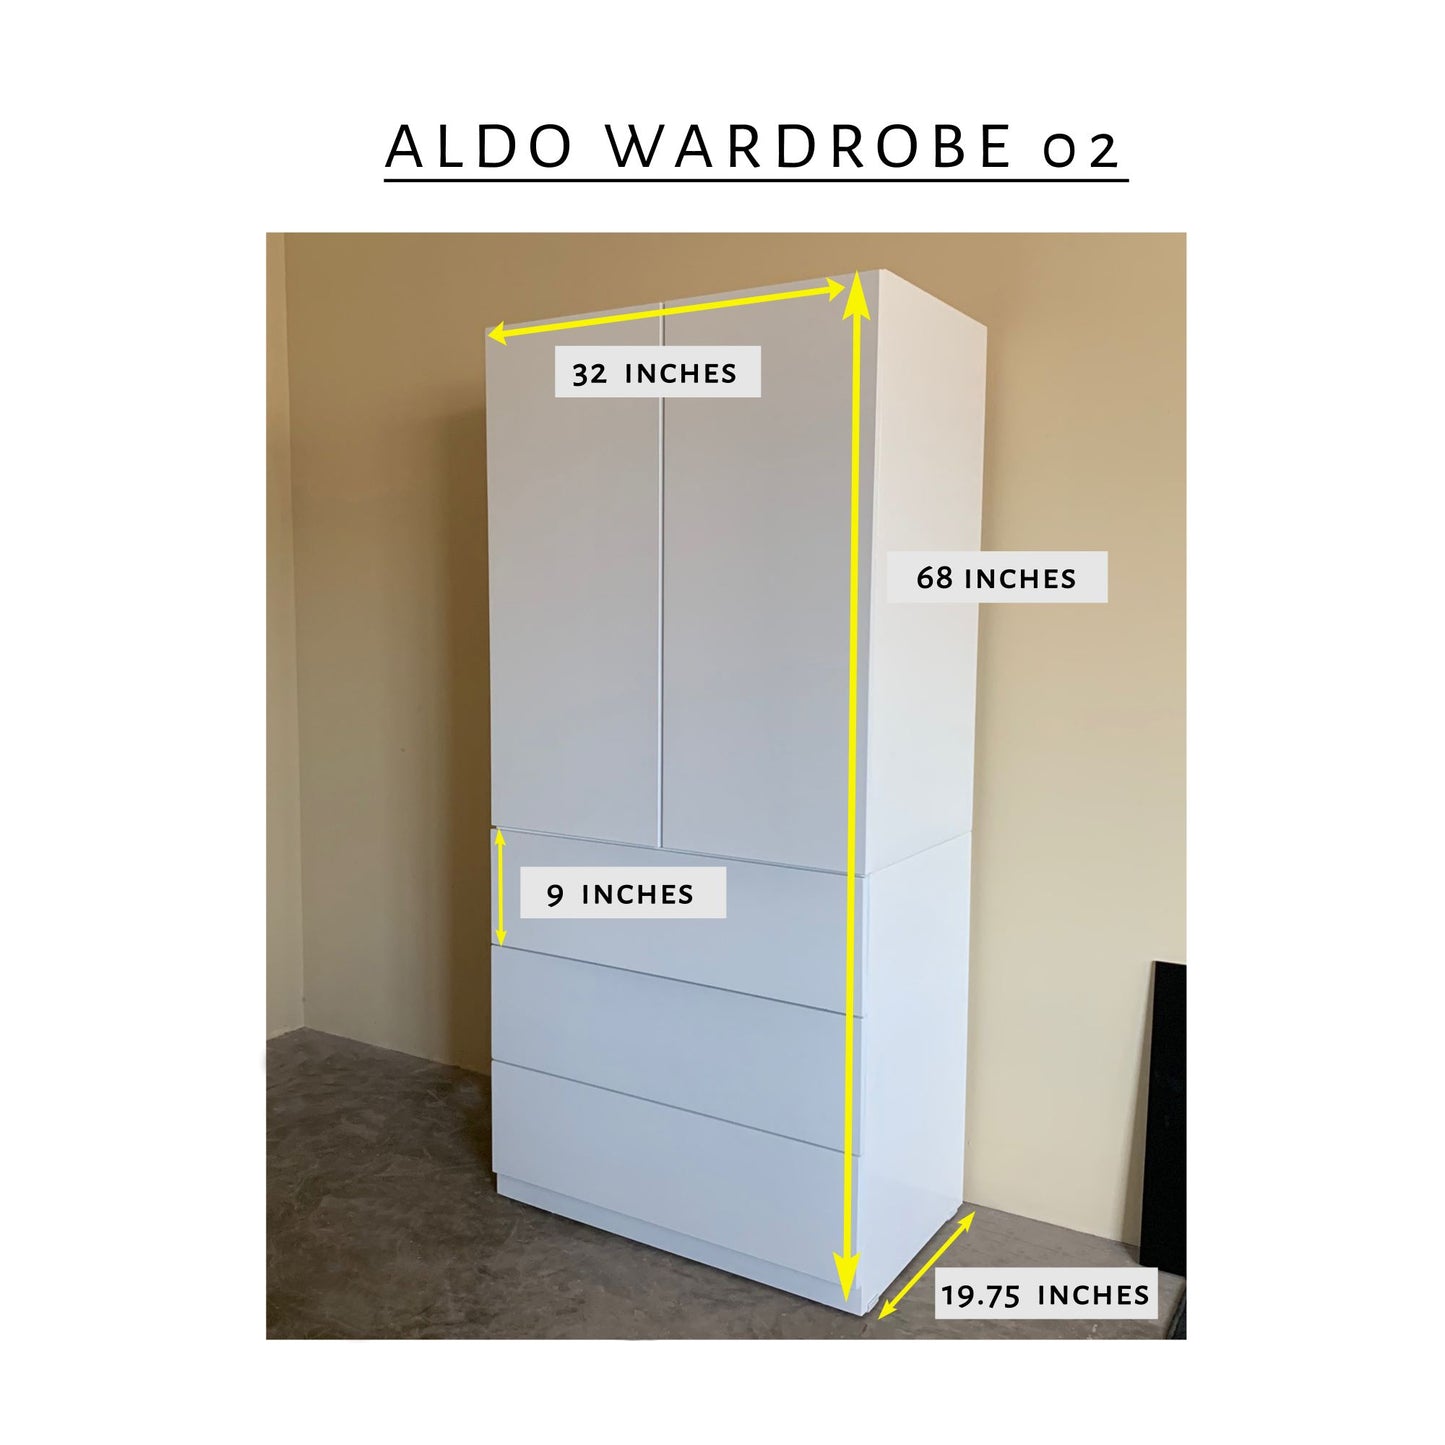 Aldo Wardrobe 02